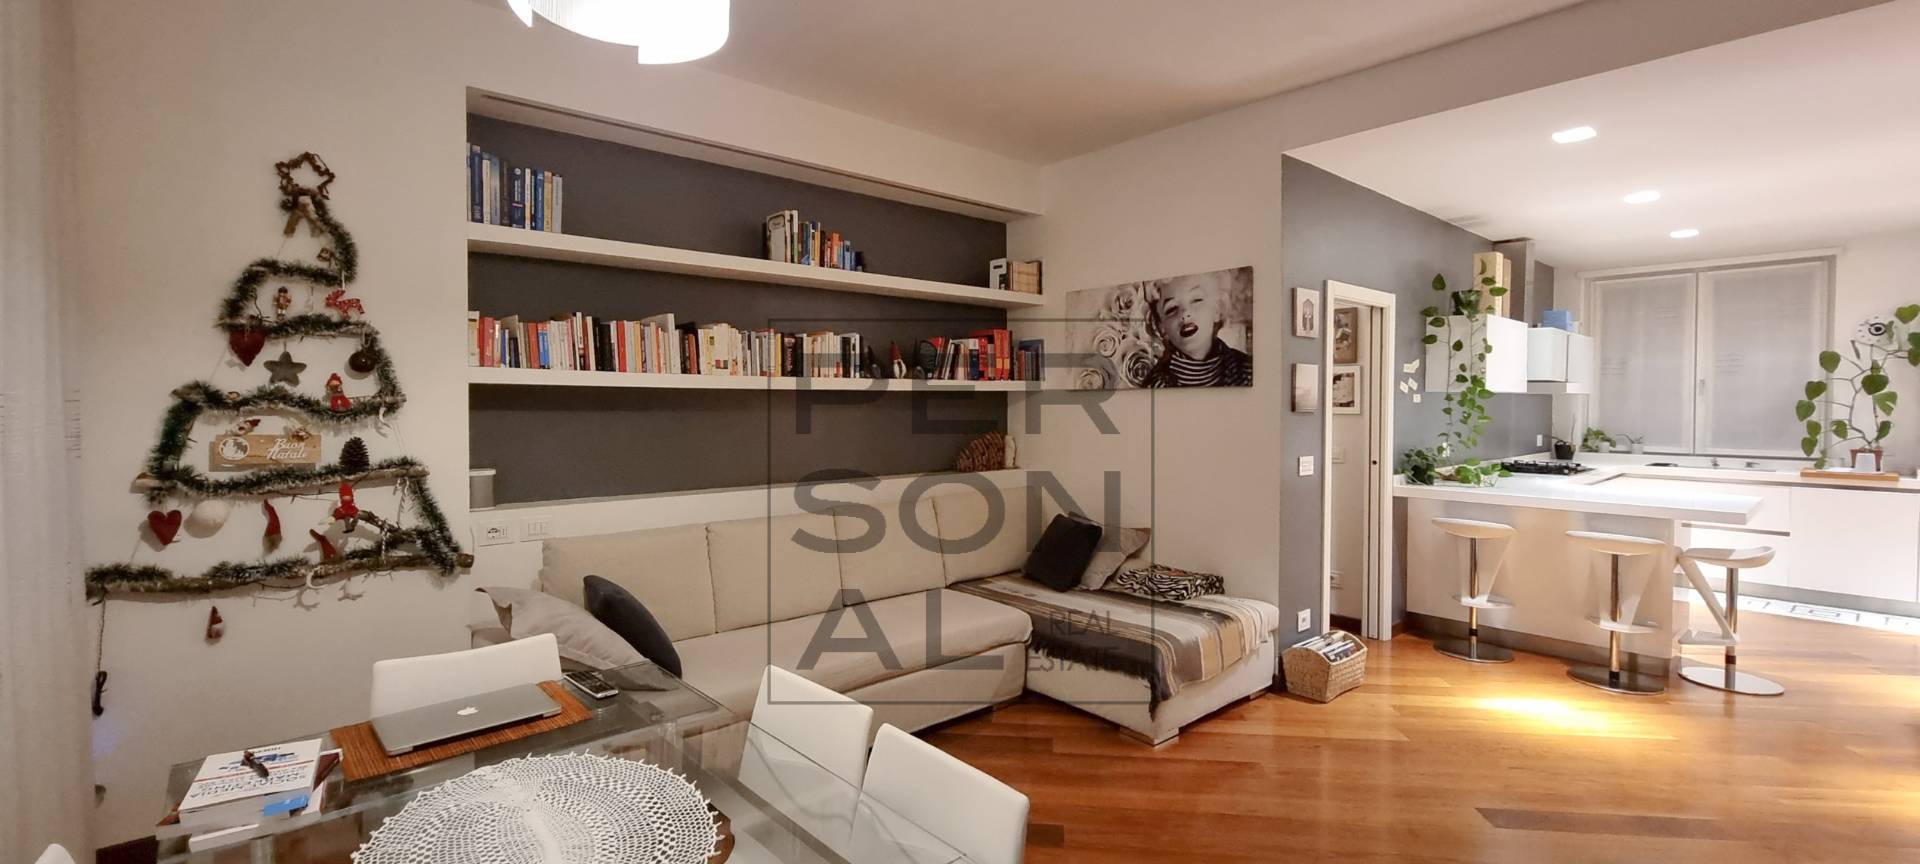 Foto appartamento in affitto a Lavis (Trento)